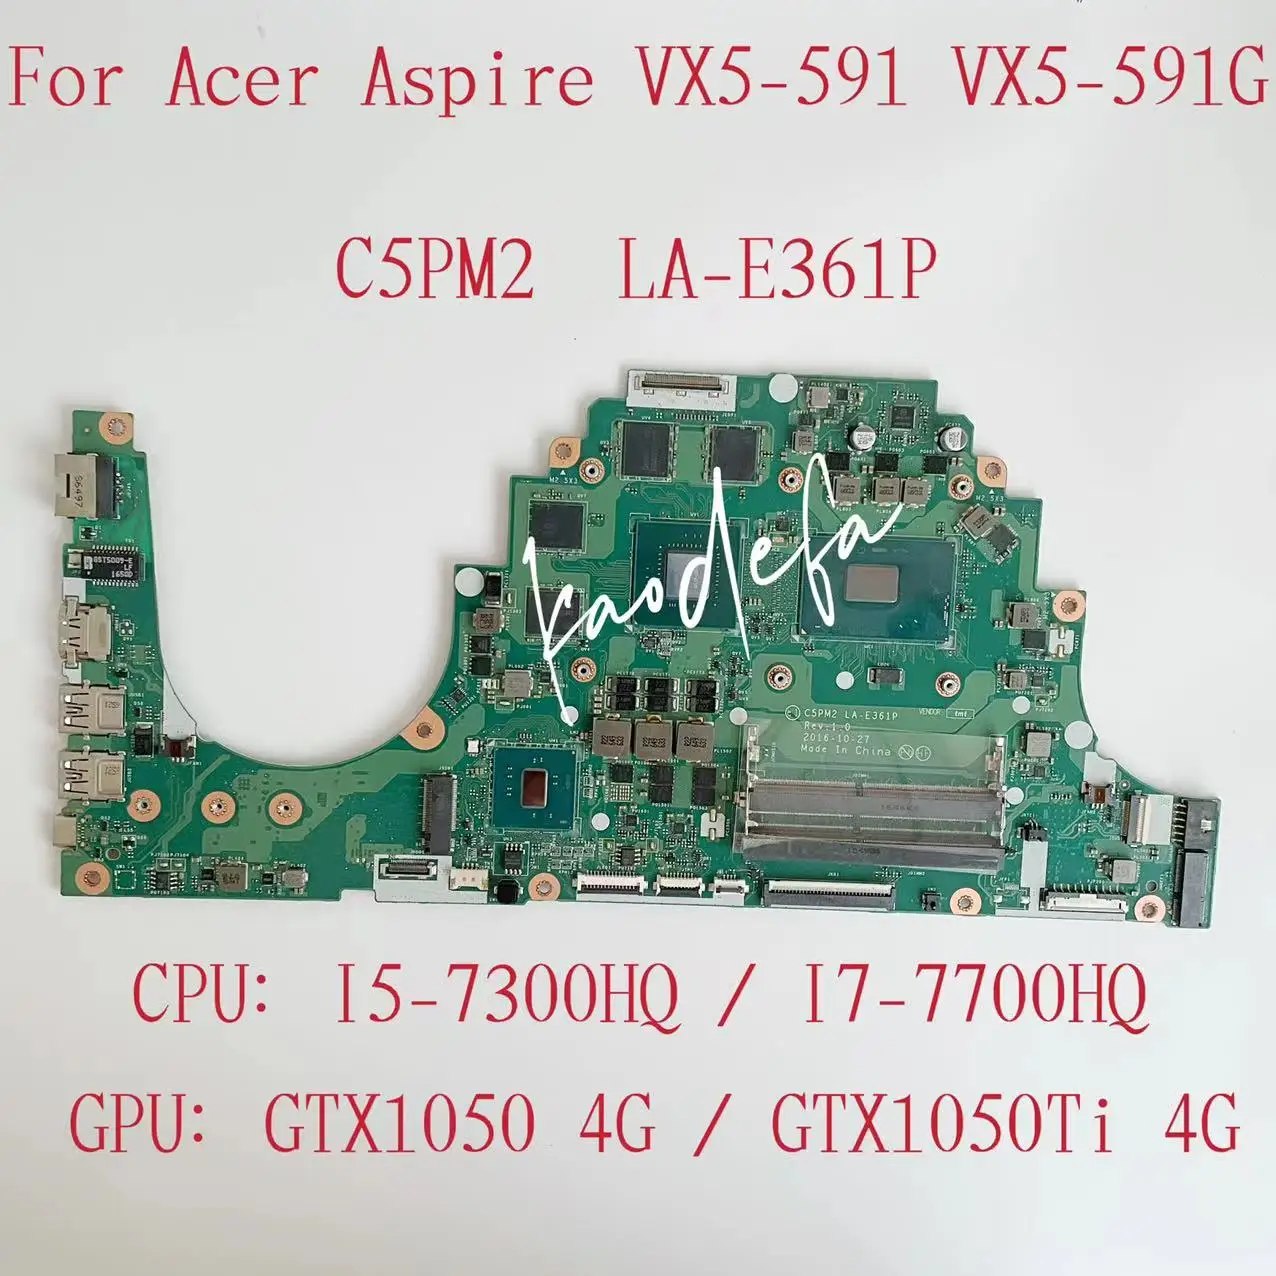 C5PM2 LA-E361P Parringboard para Acer Aspire VX5-591 CPU portátil portátil CPU i5-7300HQ / i7-7700HQ GPU: GTX1050 / 1050TI PRUEBA 4G OK OK